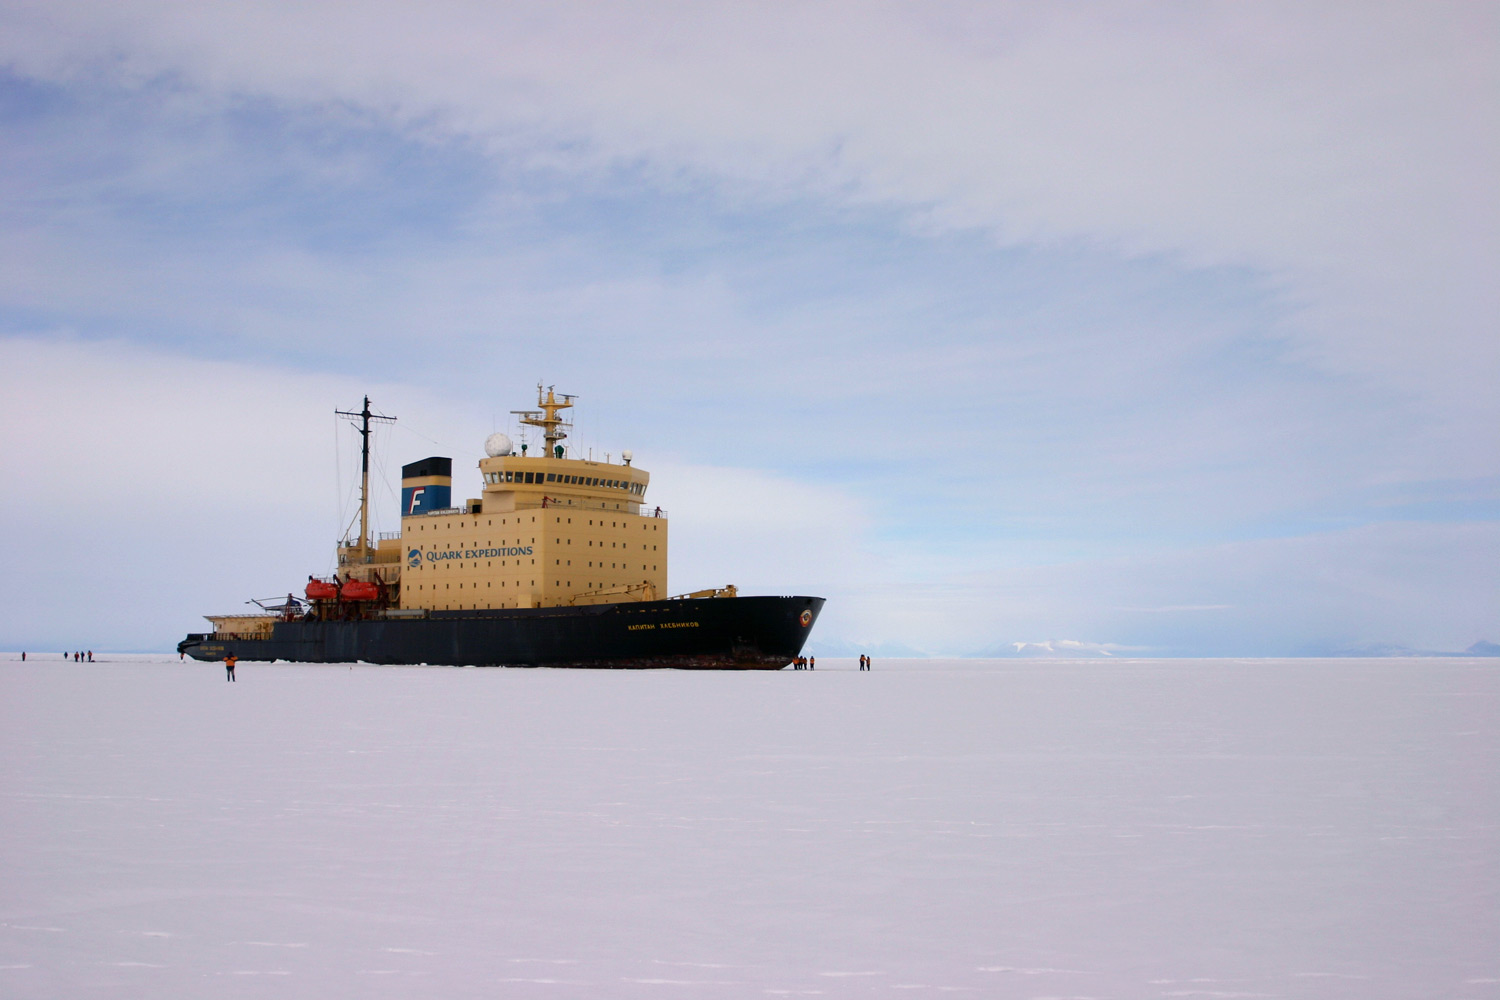 Kapitan Khlebnikov in fast ice, McMurdo Sound